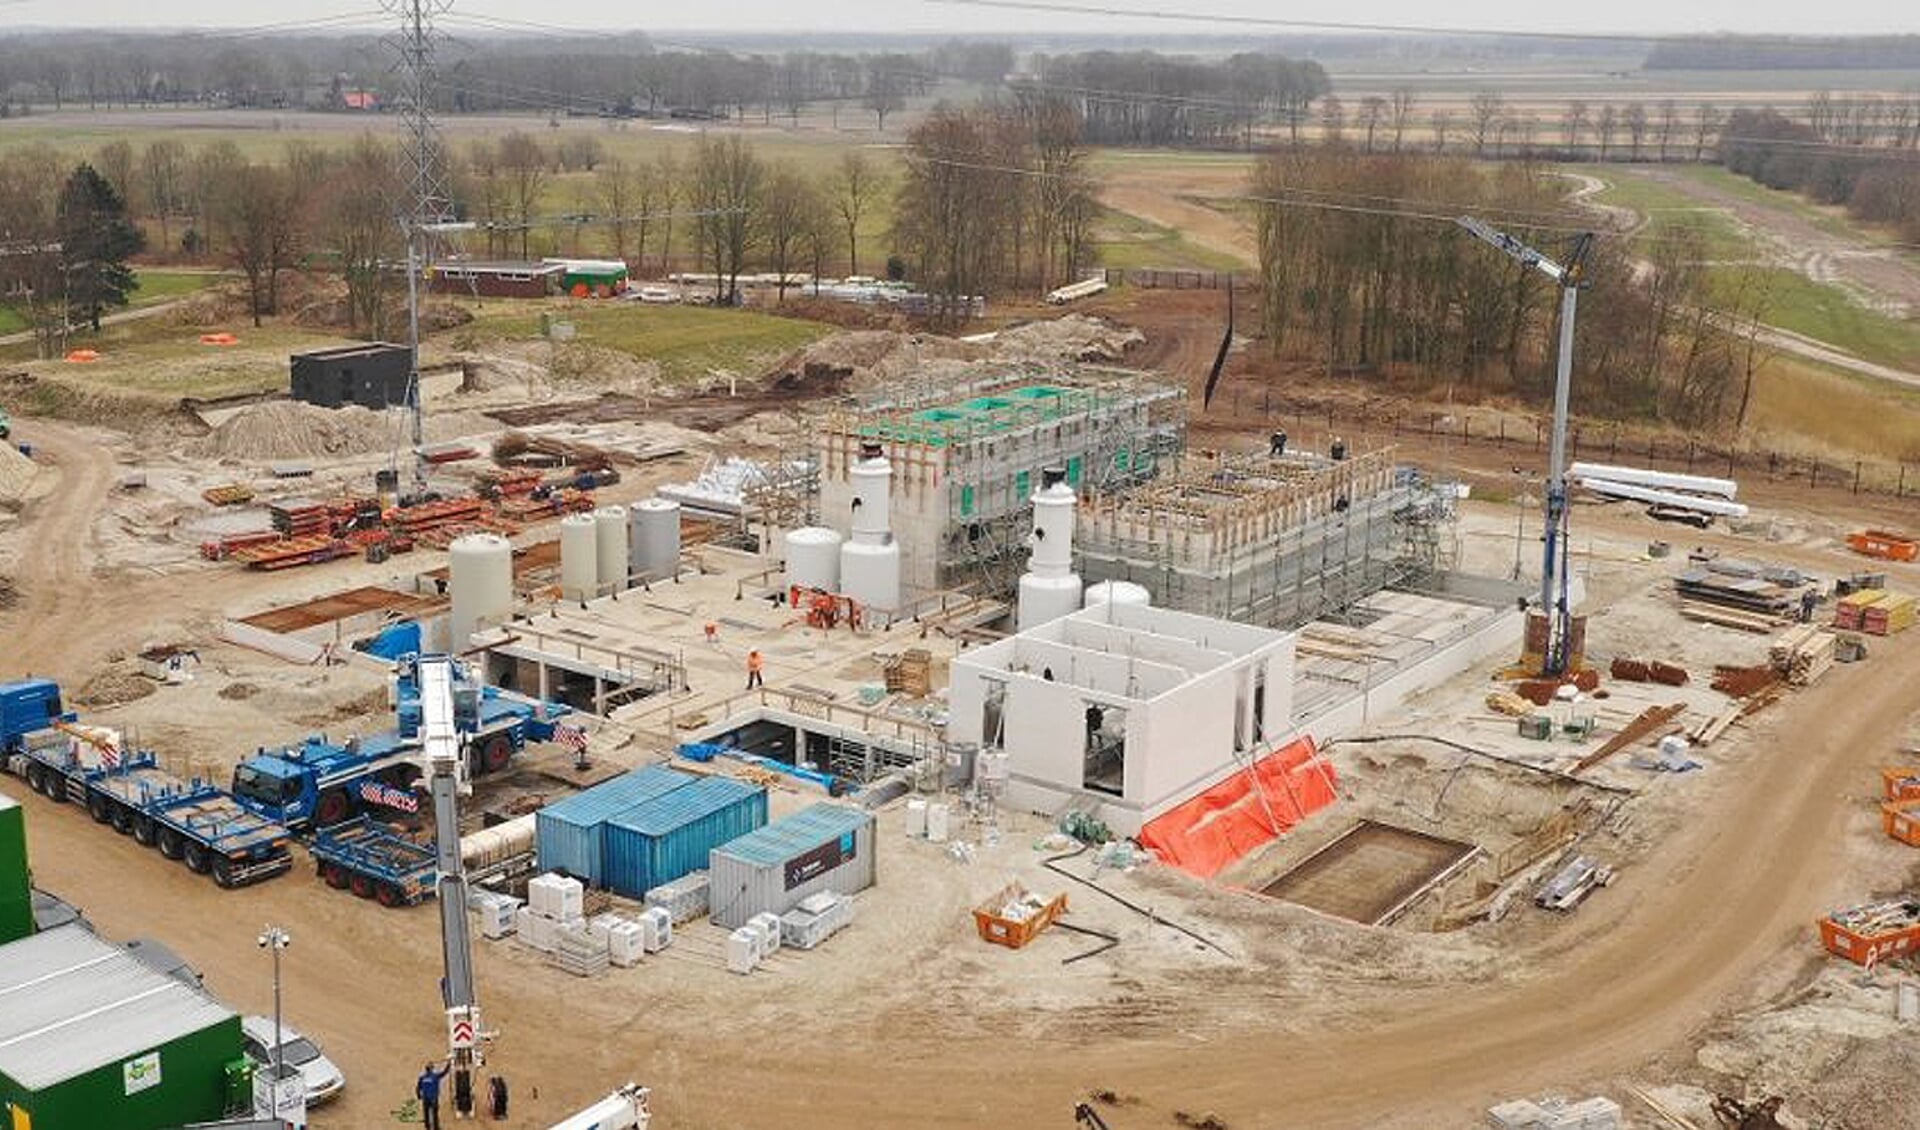 De drinkwaterfabriek in Beilen in aanbouw (foto WMD).